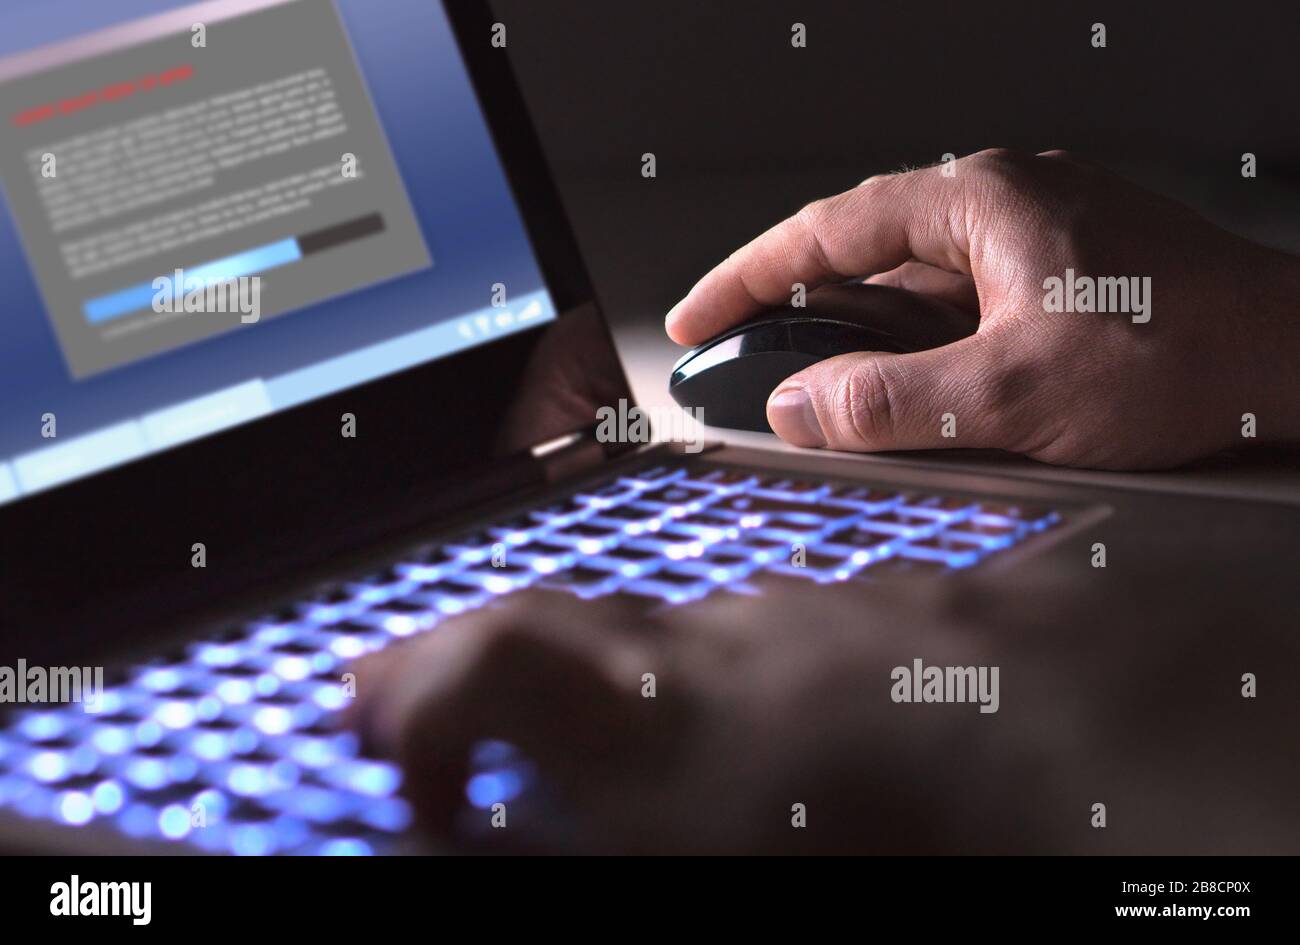 Mann installiert nachts im Dunkeln Software auf dem Laptop. Hacker laden illegale Programme oder Typen, die Dateien herunterladen. Konzept für Cyber-Sicherheit, Piraterie oder Viren. Stockfoto